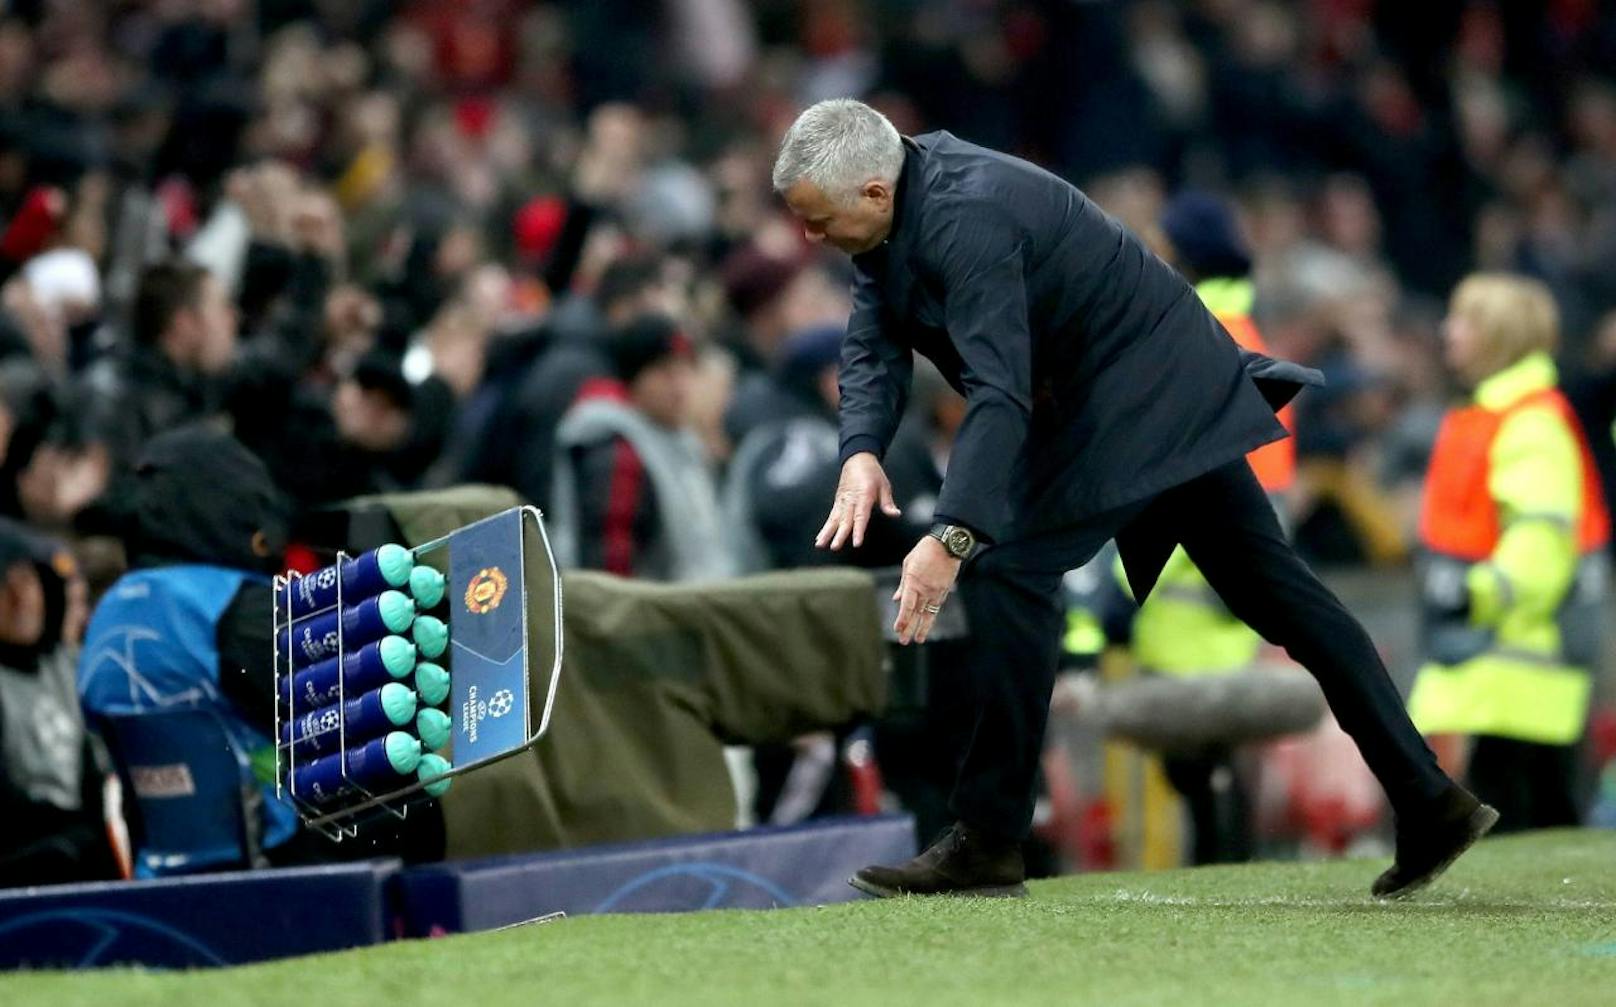 Manchester United schlug YB Bern in der Nachspielzeit. Jose Mourinho ging beim Jubel auf seine Flaschen los, herzte schließlich aber auch noch den Siegestorschützen Marouane Fellaini.